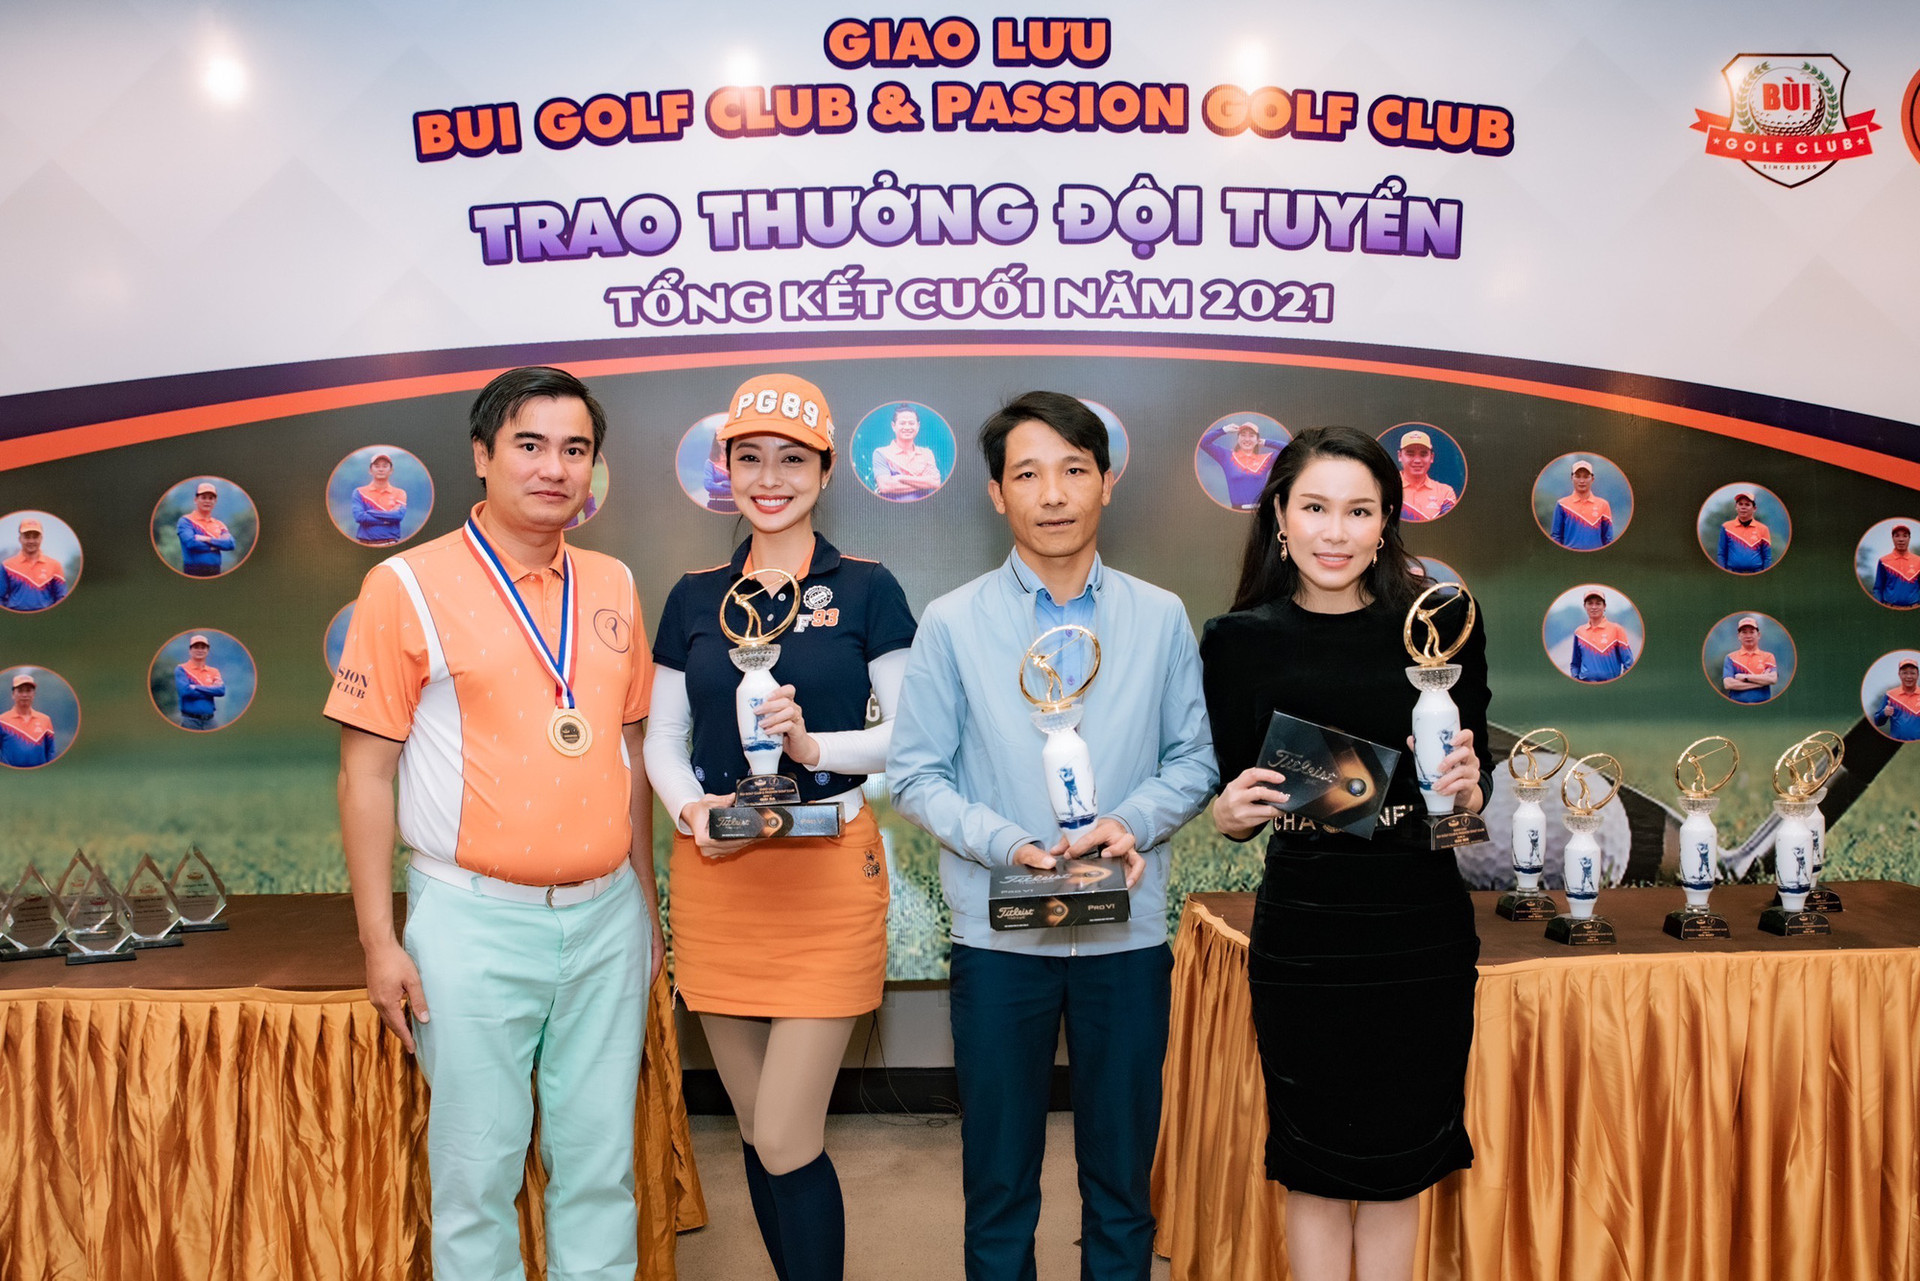 Hoa hậu Jennifer Phạm ẵm cup trong Giải golf Giao lưu giữa CLB golf họ Bùi và CLB Passion Golf - Ảnh 5.